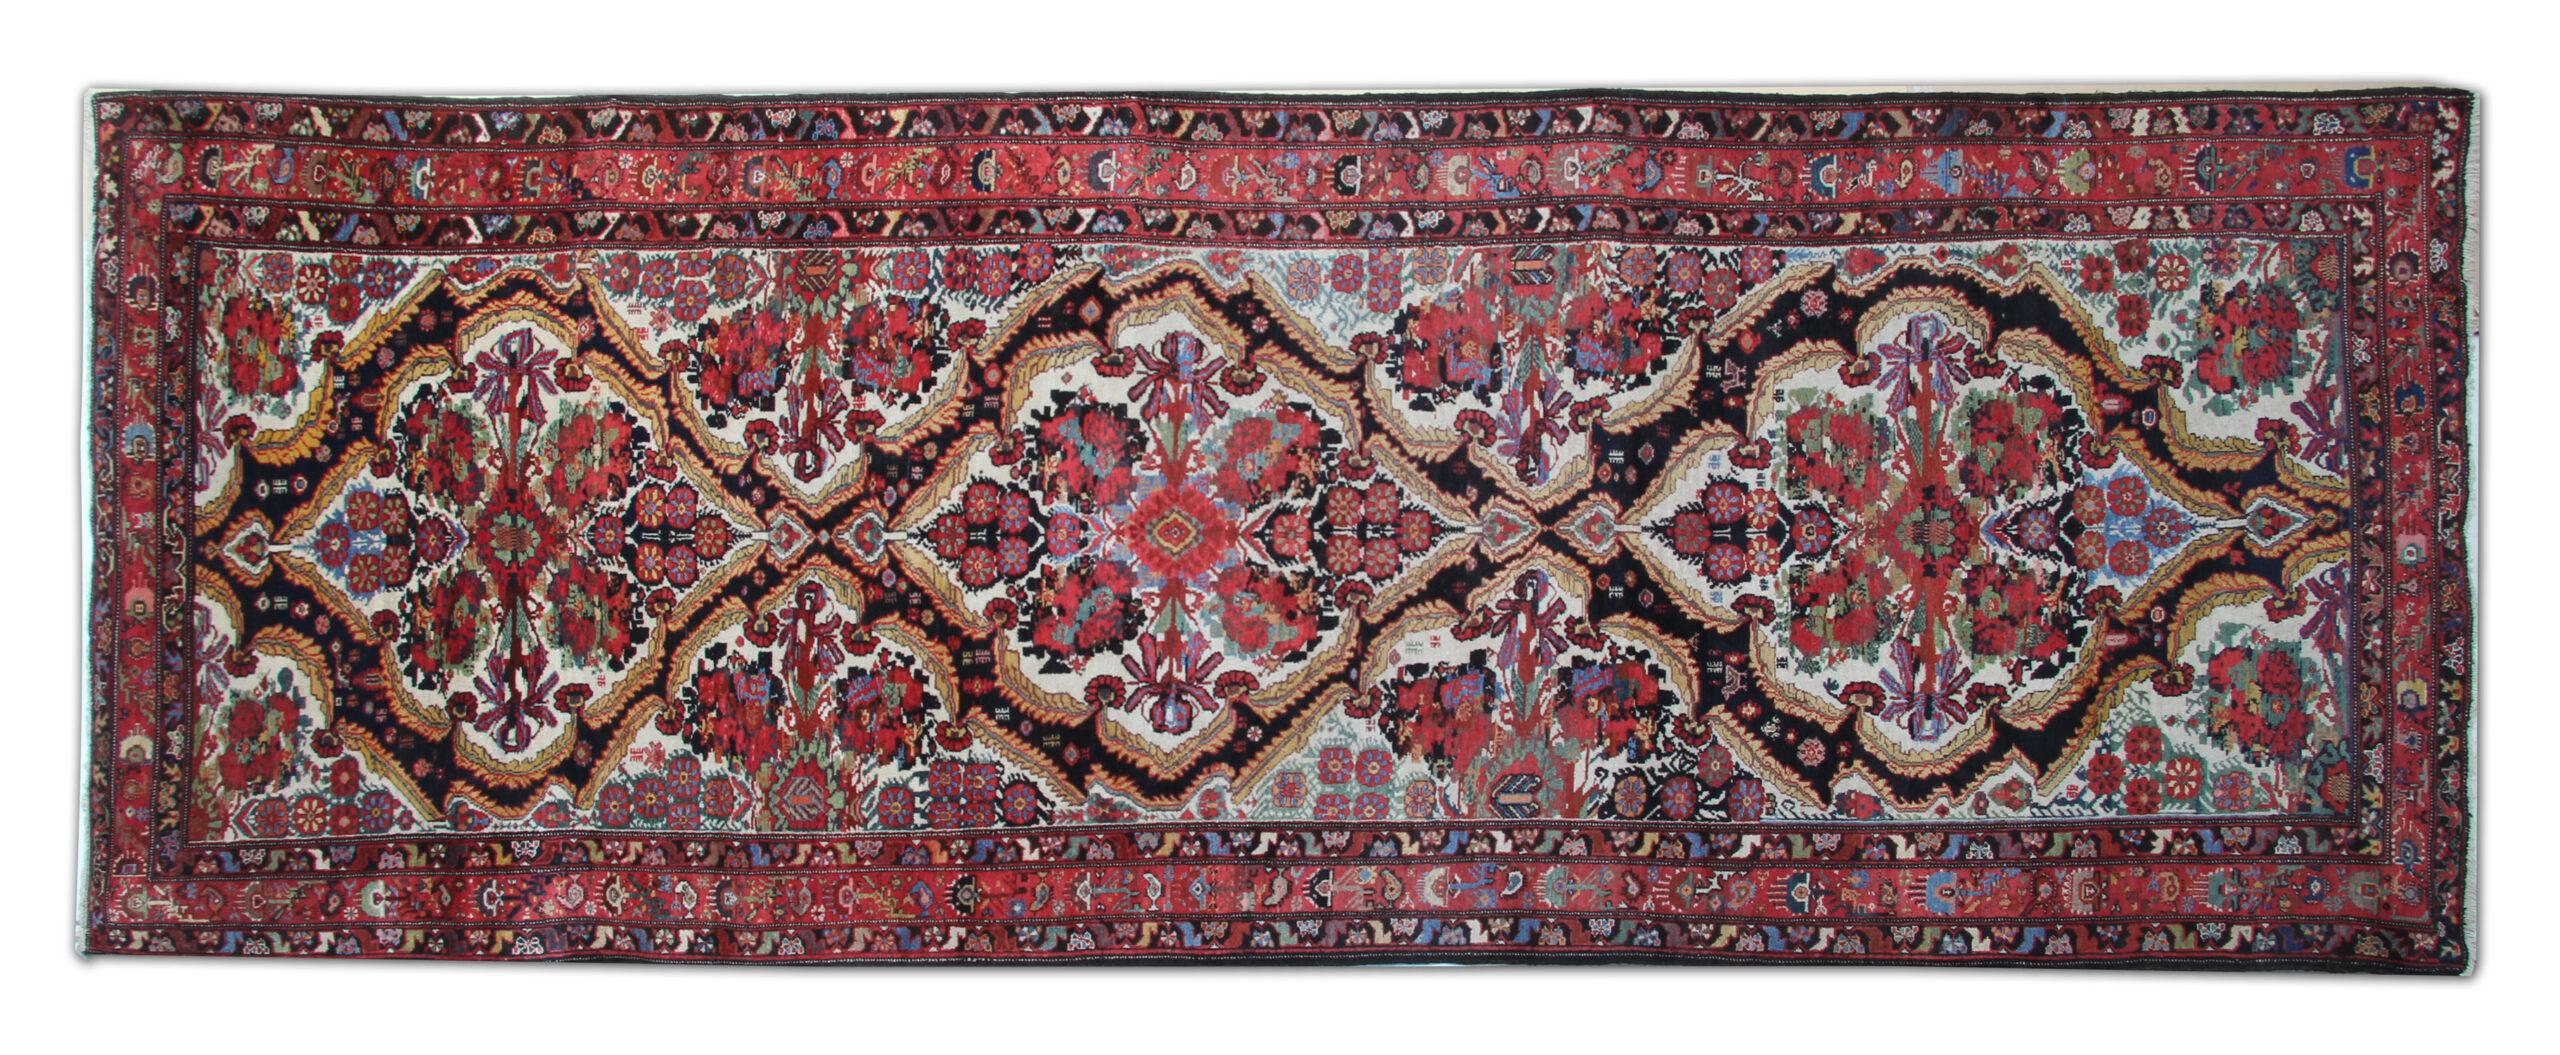 Dies ist ein schönes Beispiel eines antiken Teppichs aus dem 19. Jahrhundert, der im Iran handgeknüpft wurde. Mit einem floralen, botanischen Muster in der Mitte, handgeknüpft aus handgesponnener Wolle und Baumwolle. Die leuchtenden Farben wurden